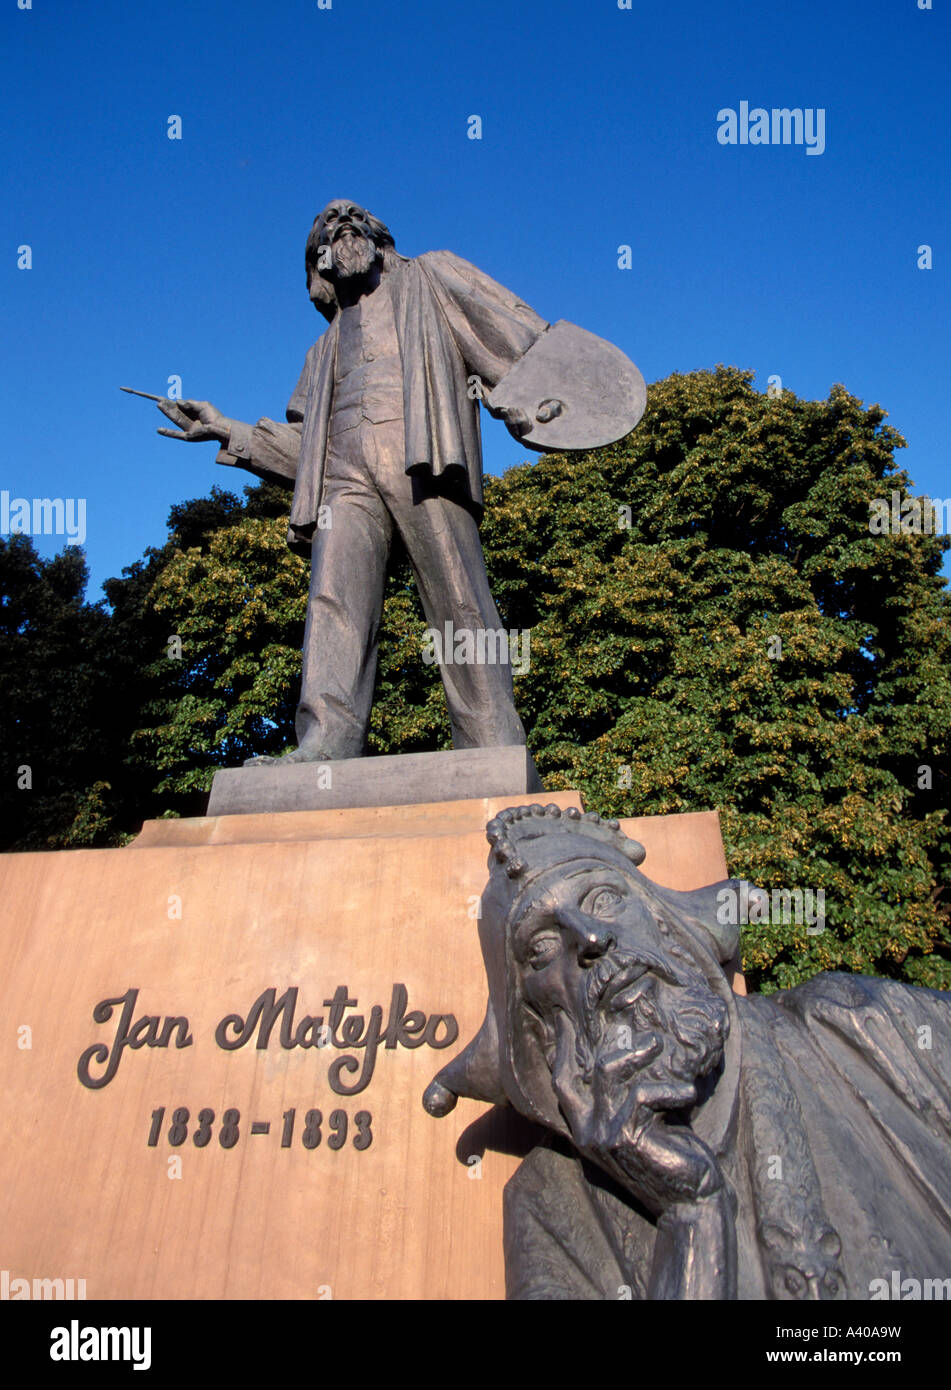 Monument de Varsovie Pologne polonais Jan Matejko peintre plus prestigieux 18381893 Stanczyk a été un fou du roi Sigismond I Banque D'Images